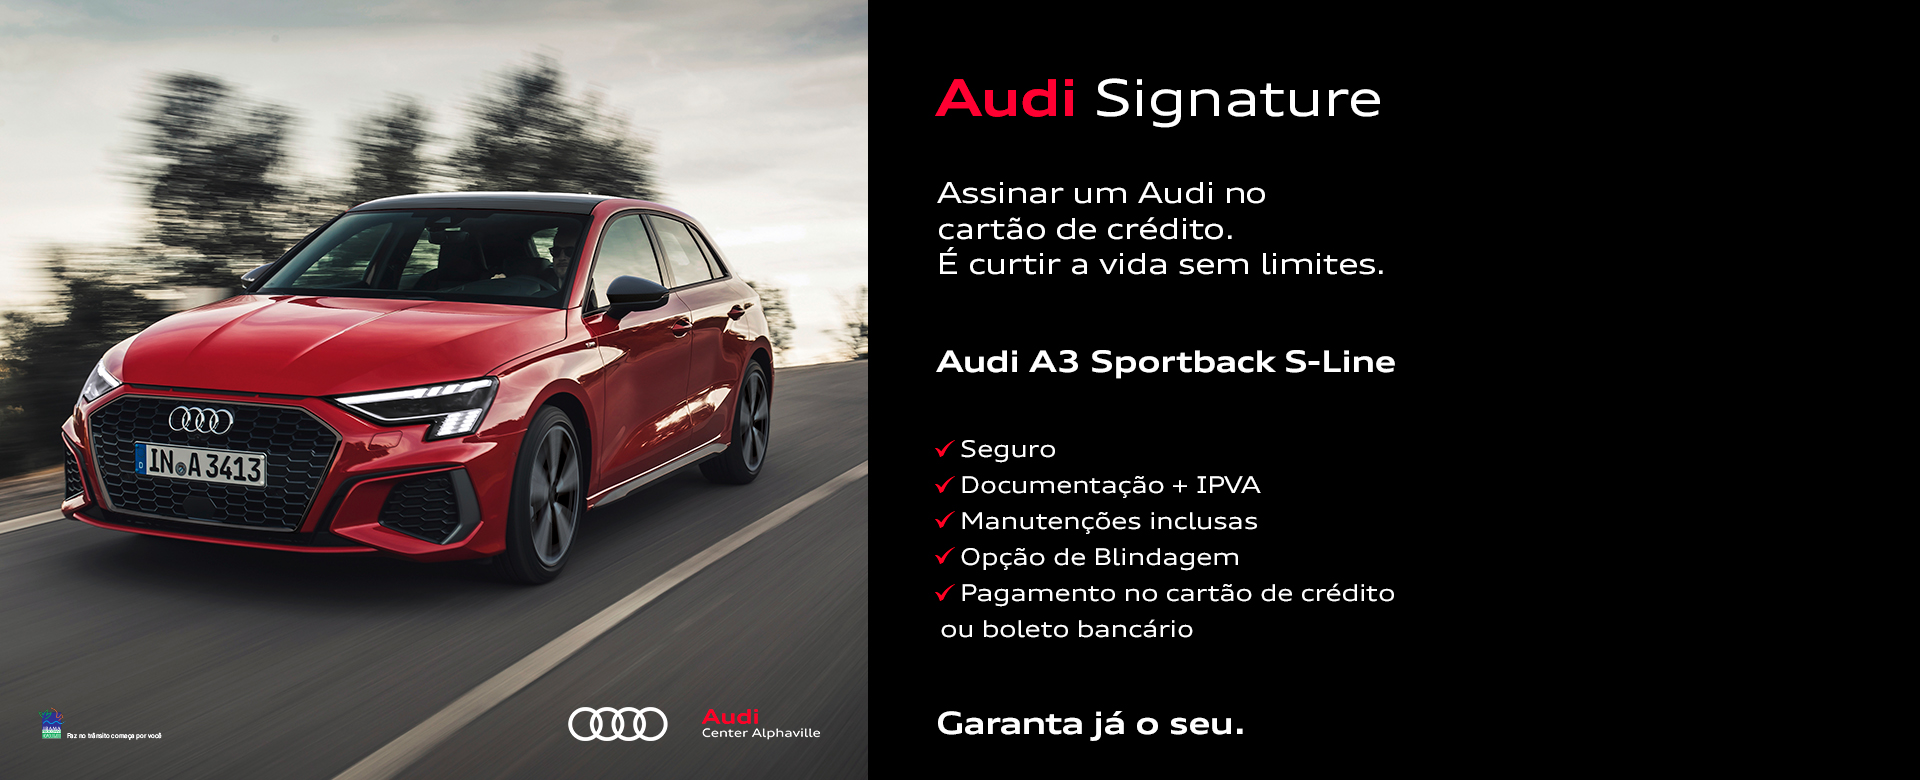 Audi Signature